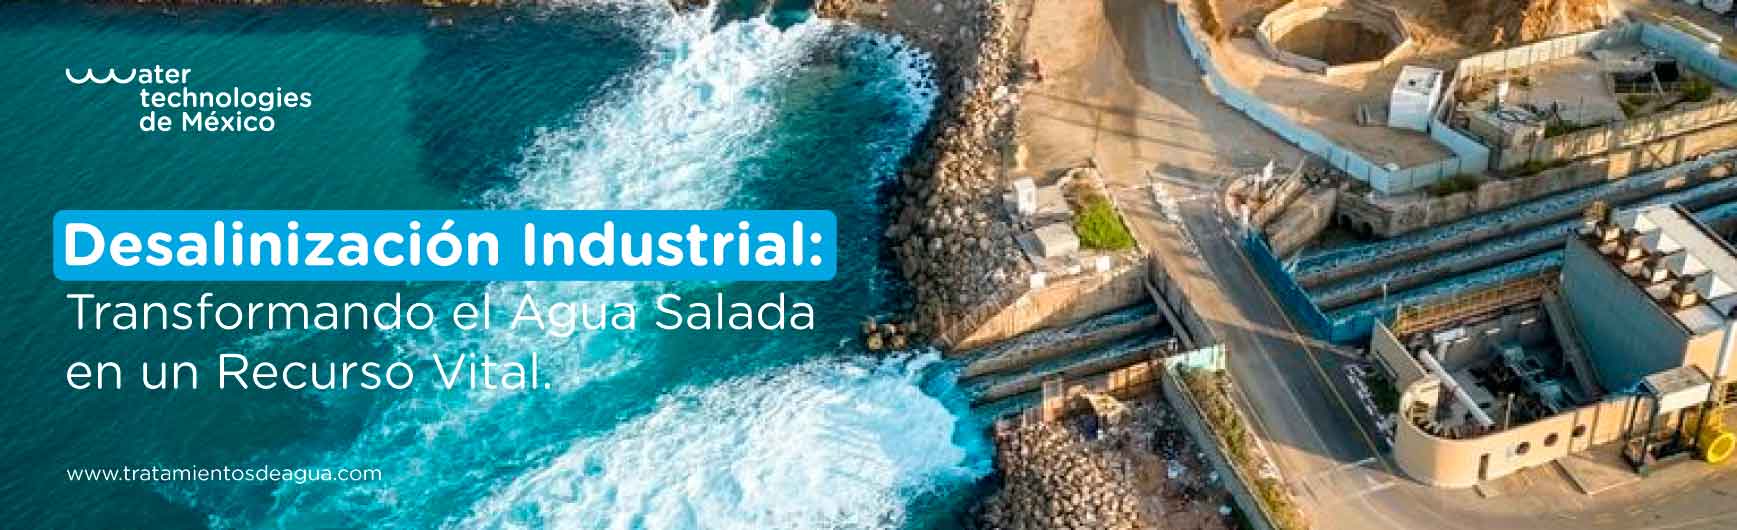 Desalinización Industrial: Transformando el Agua Salada en un Recurso Vital.